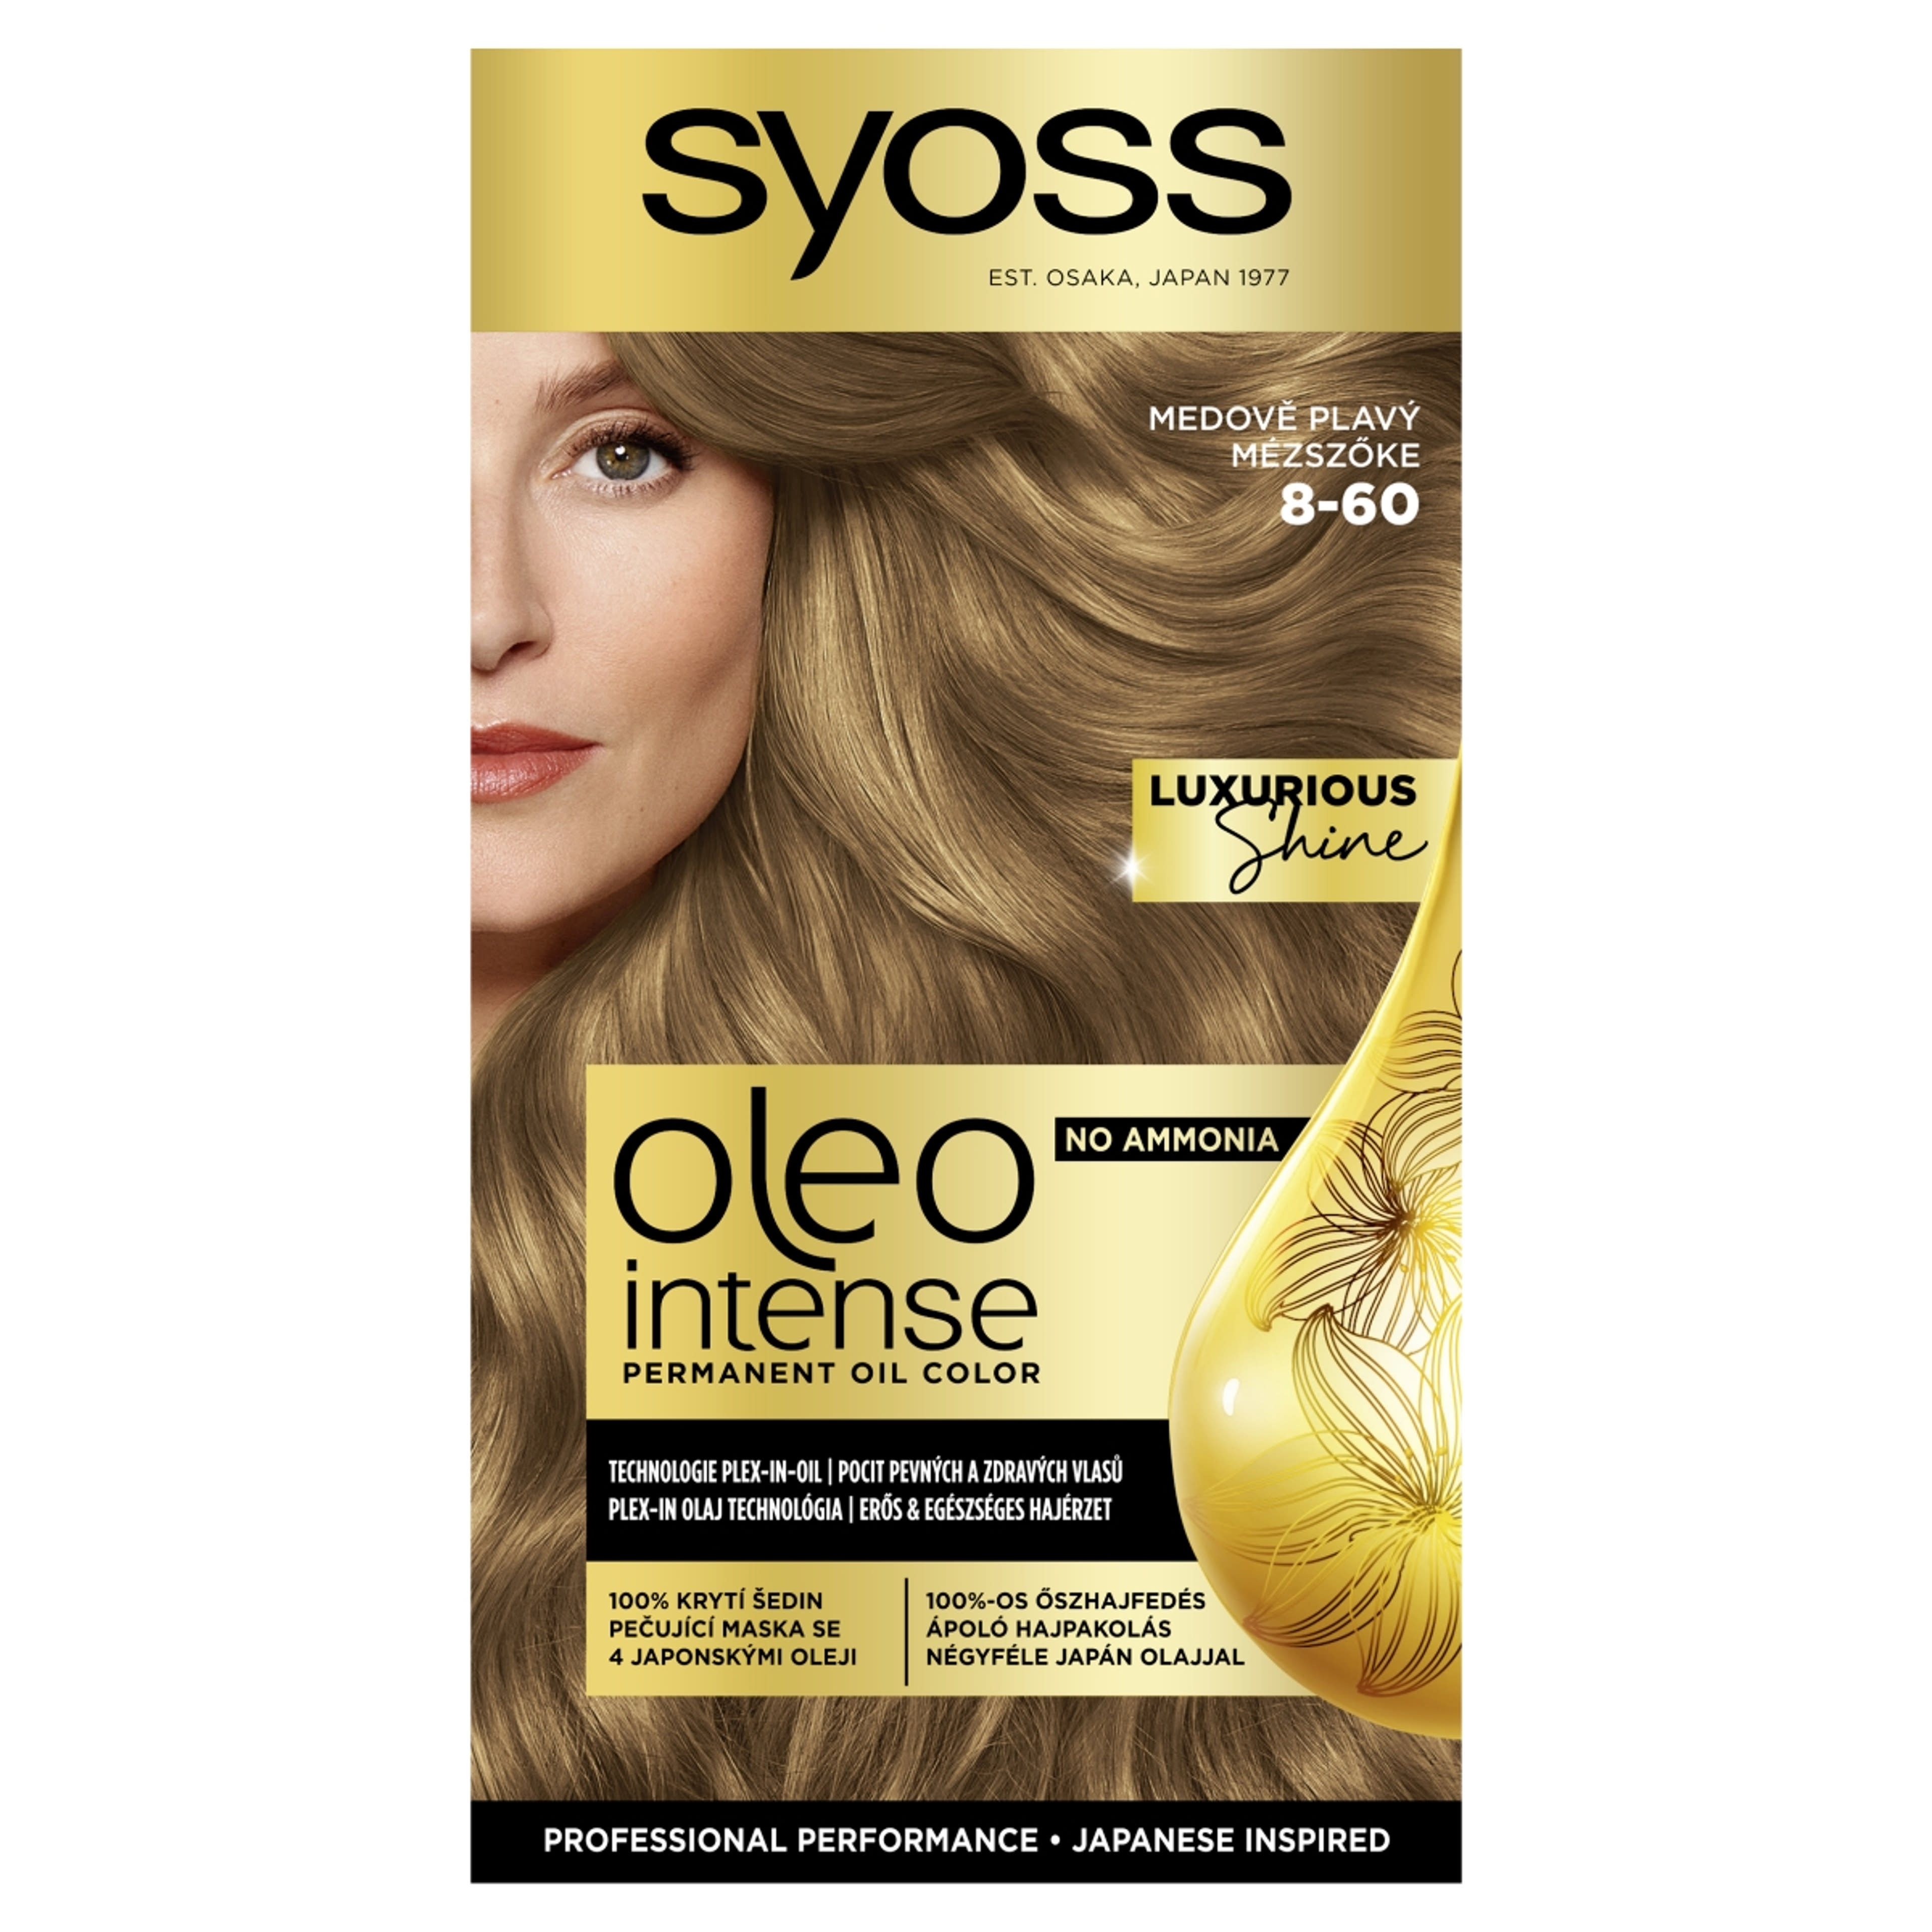 Syoss Oleo Intense tartós hajfesték 8-60 mézszőke - 1 db